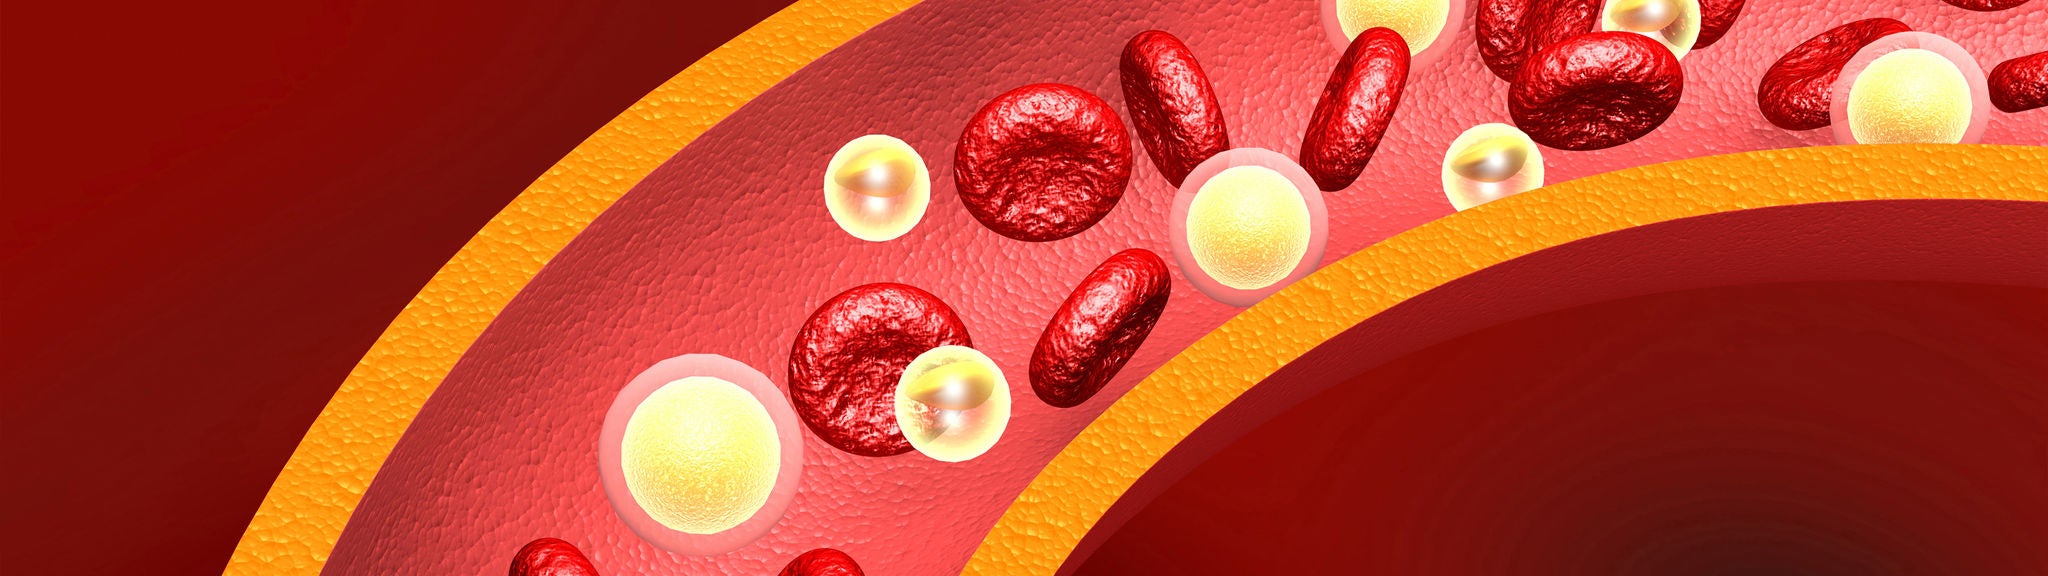 Eine Grafik zeigt Cholesterin und Blutplättchen in einem Blutgefäß.